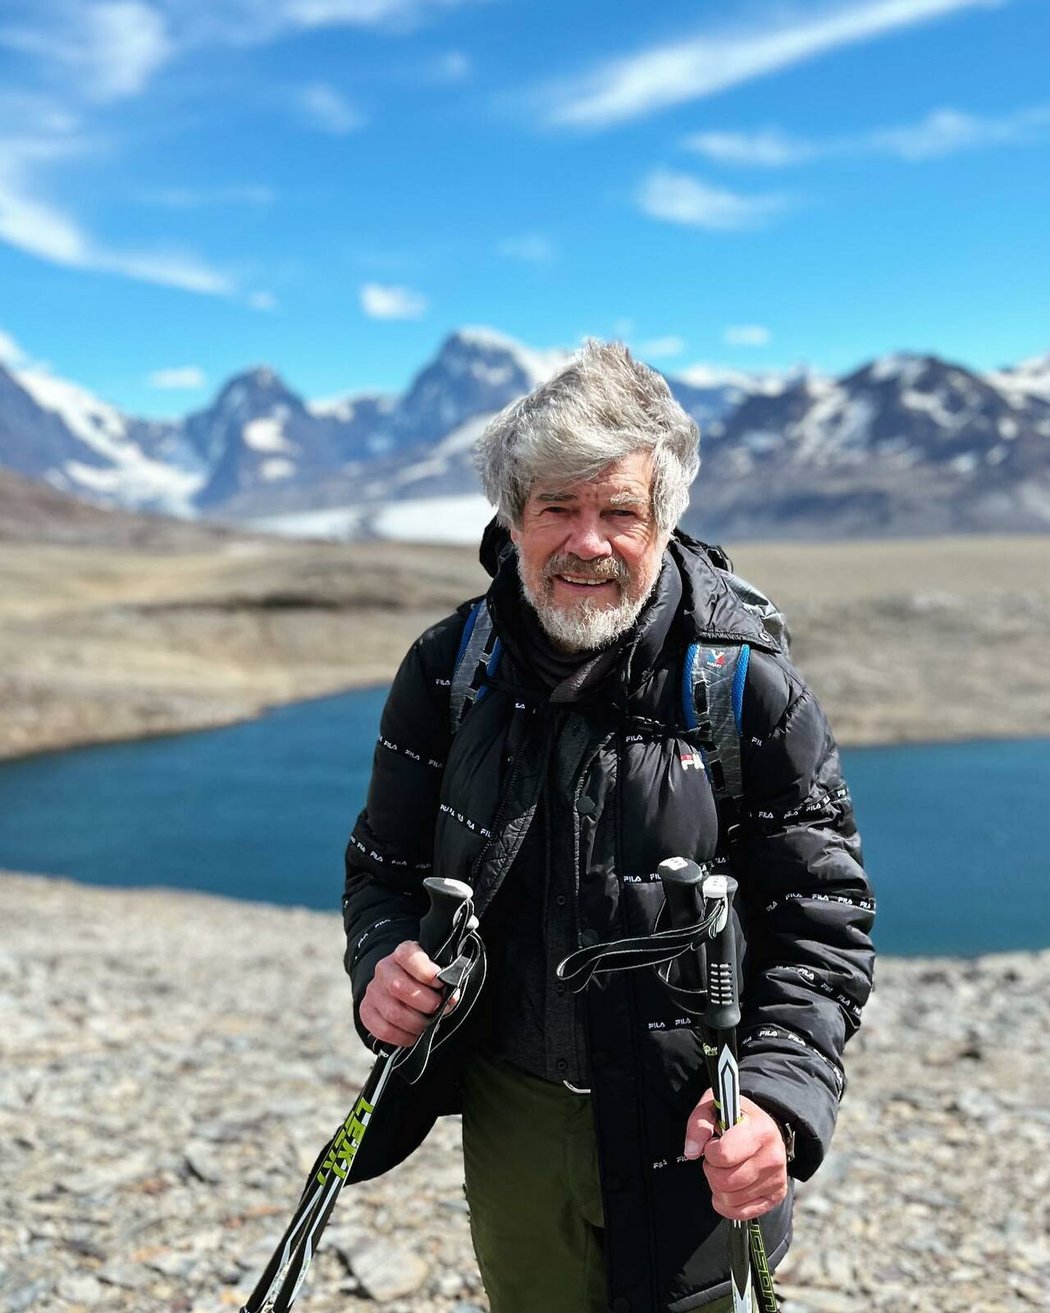 Guinessova kniha rekordů vzala Messnerovi některá prvenství